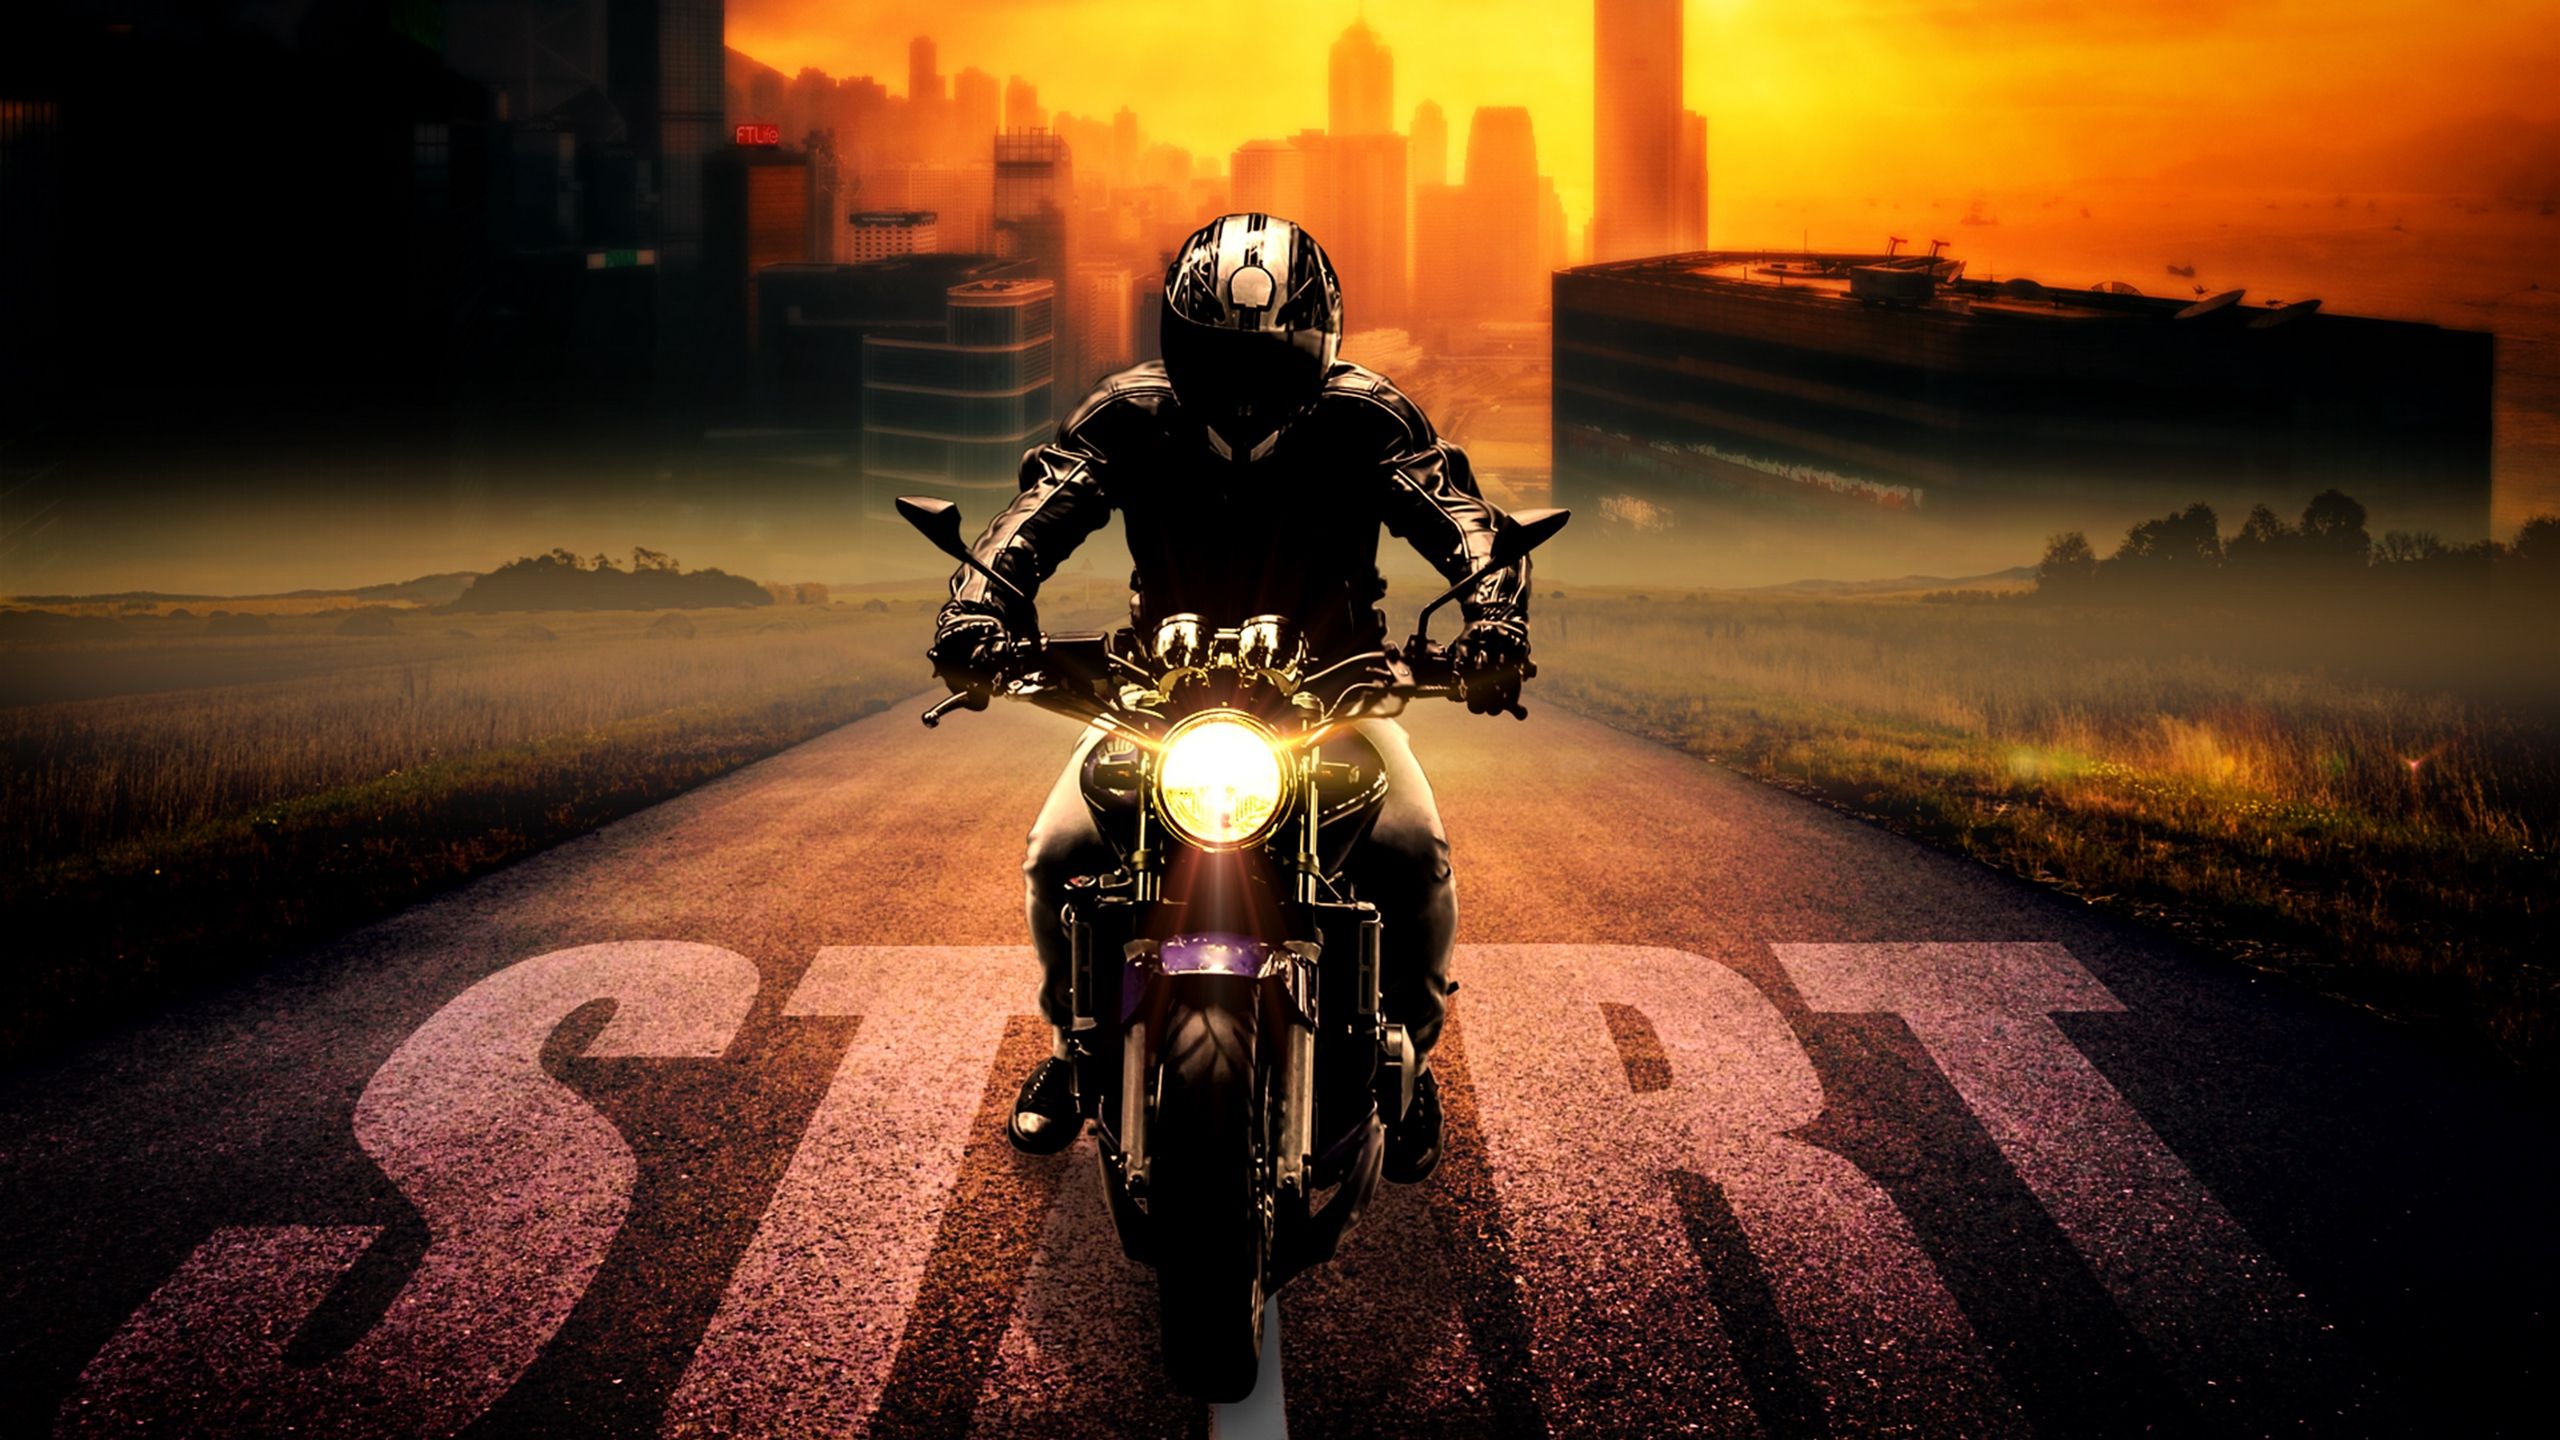 Download wallpaper 2560x1440 biker, bike, motorcycle, motorcyclist